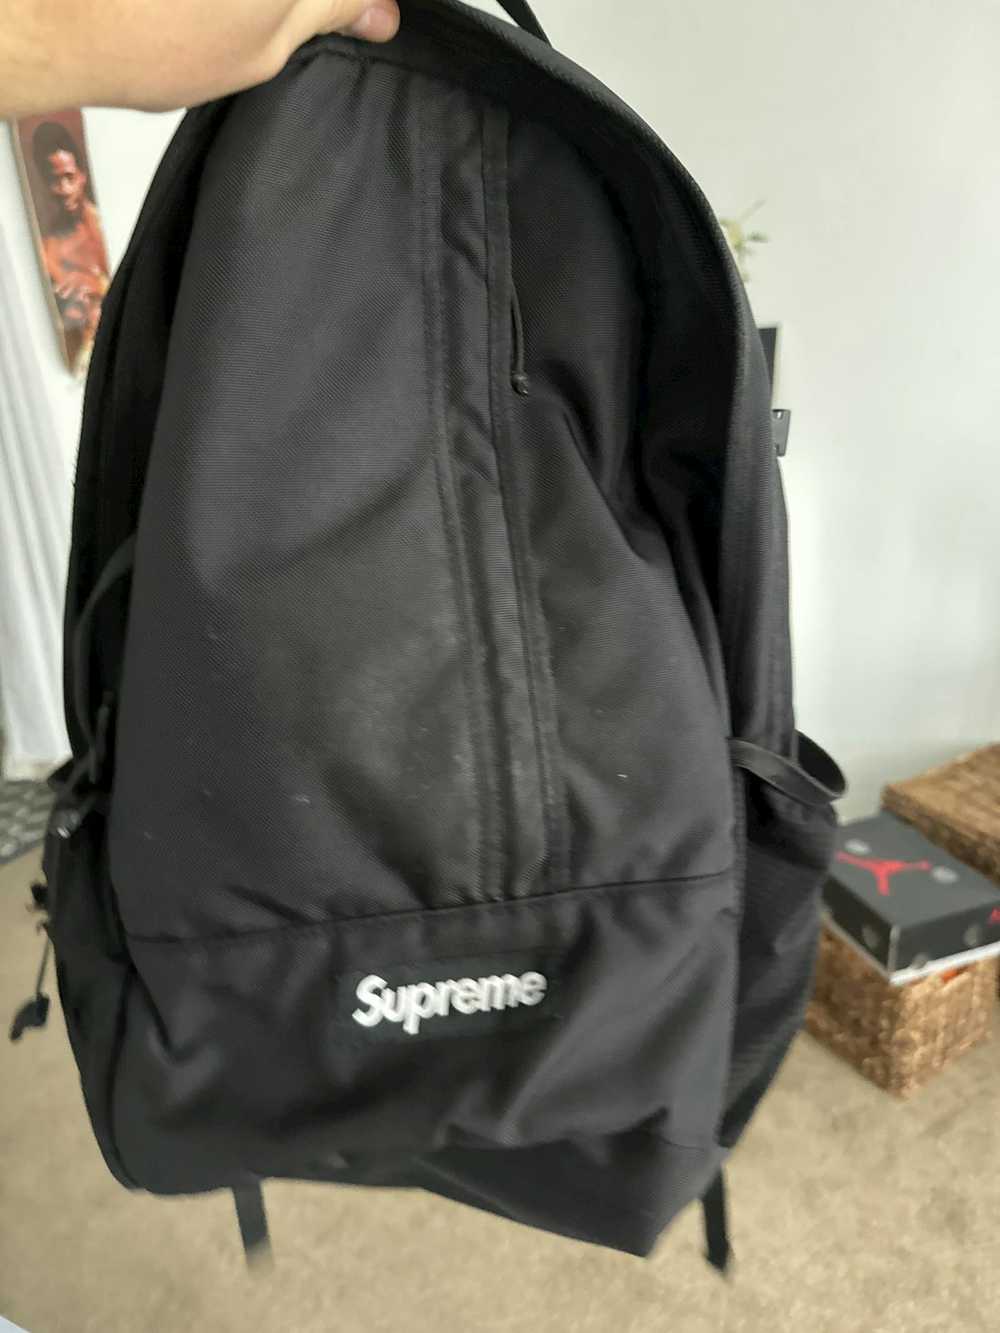 Supreme Supreme backpack (SS18) - image 6